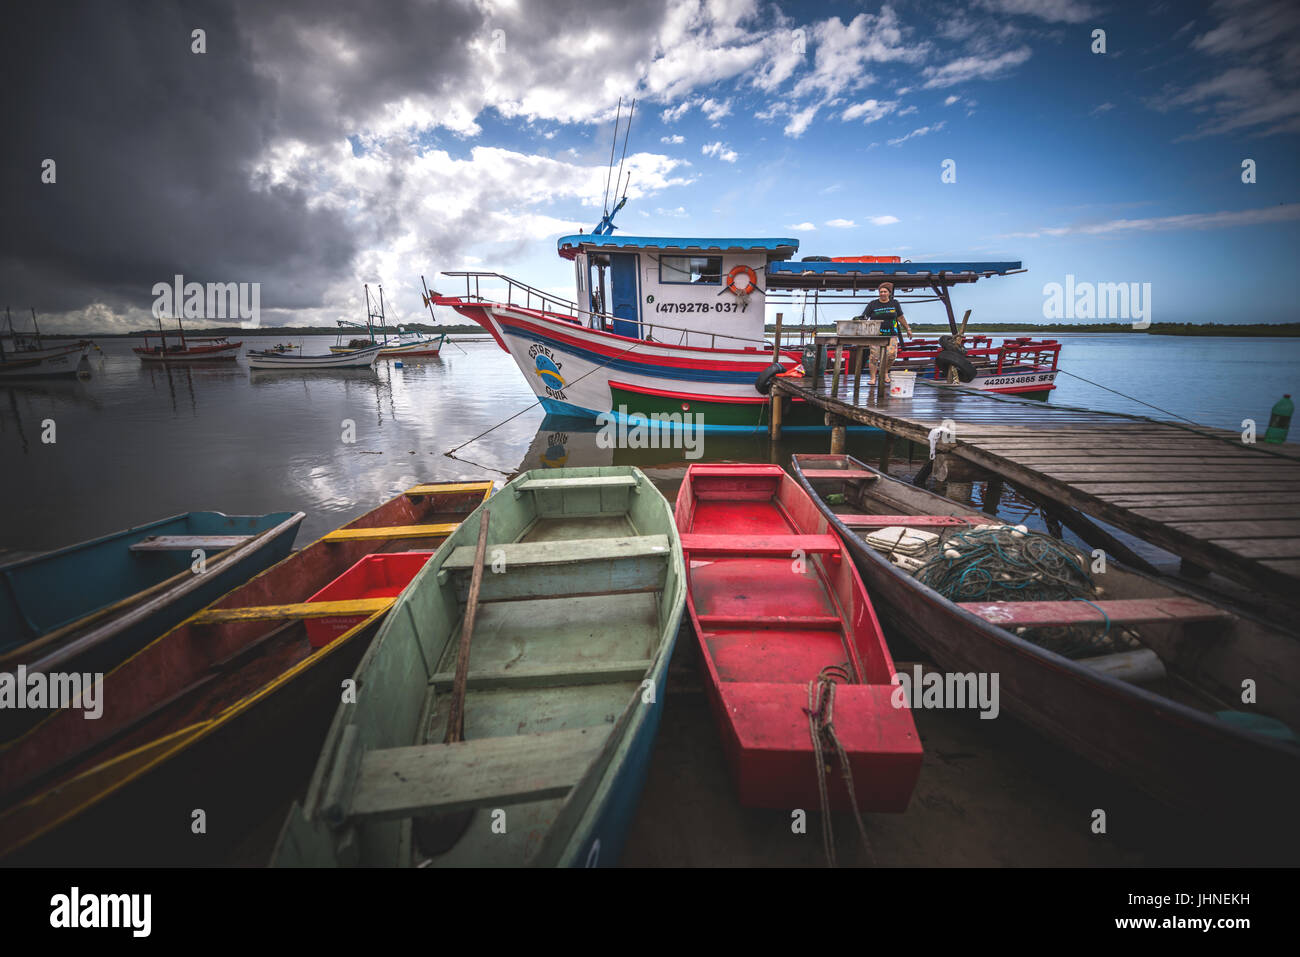 Barra do Sul, Santa Catarina, Brasilien - 8. Juli 2017: Angelboote/Fischerboote vertäut am Strand. Stockfoto